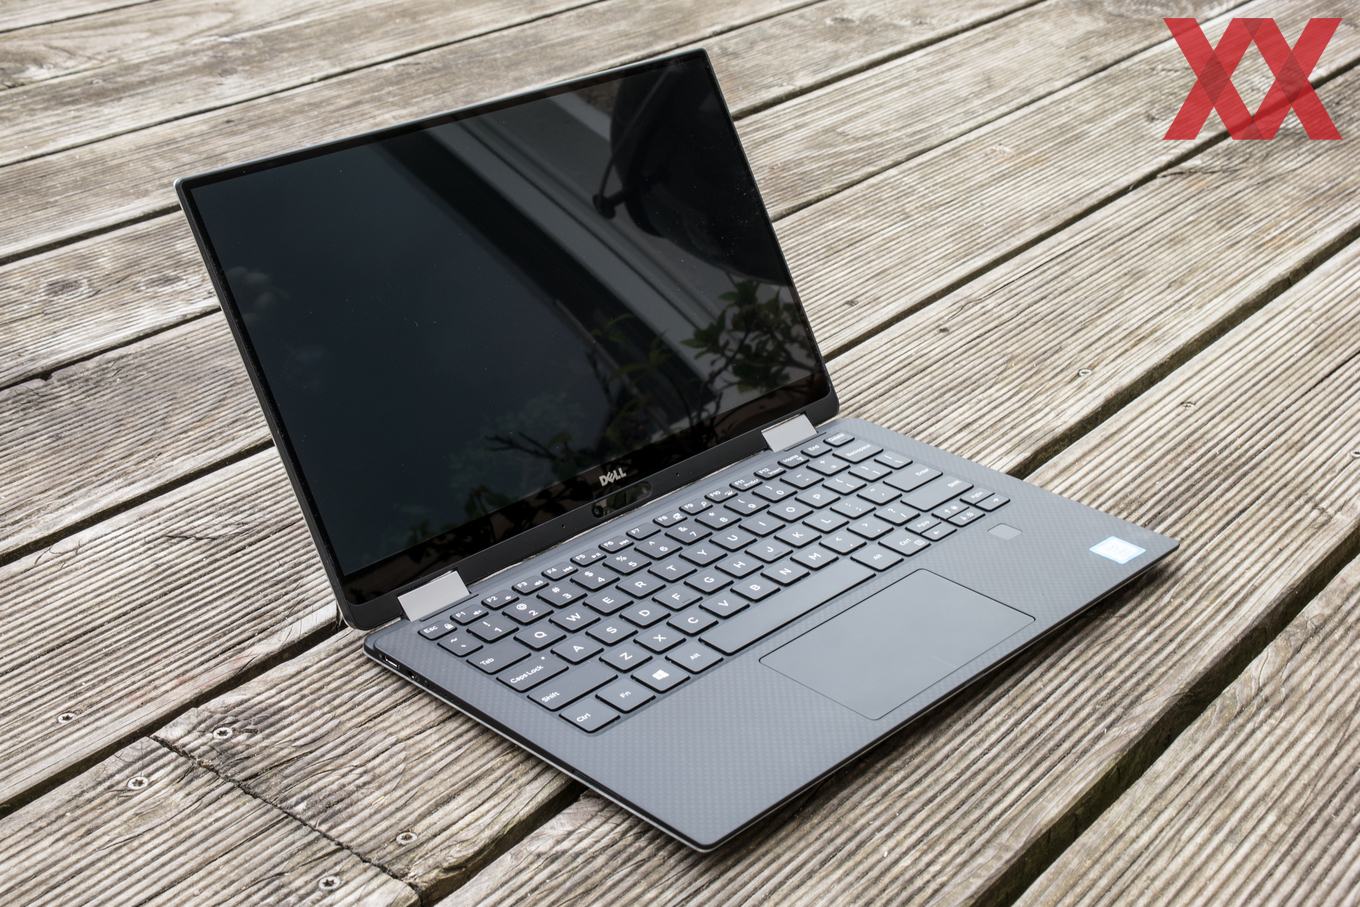 Купить Ноутбук Dell Xps 13 9350-8293